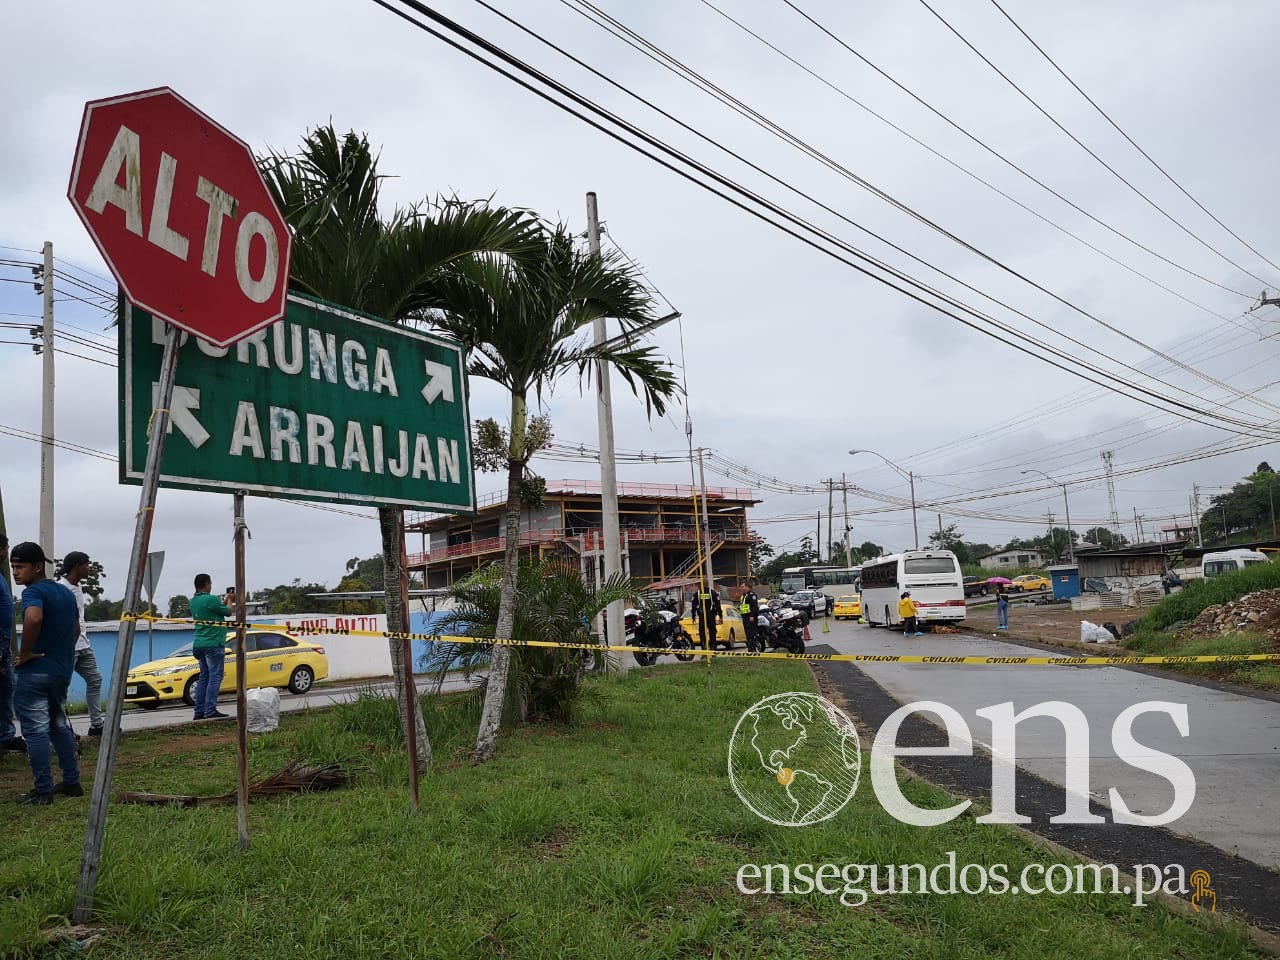 Fallece hombre arrollado por bus de la ruta Burunga en Arraiján